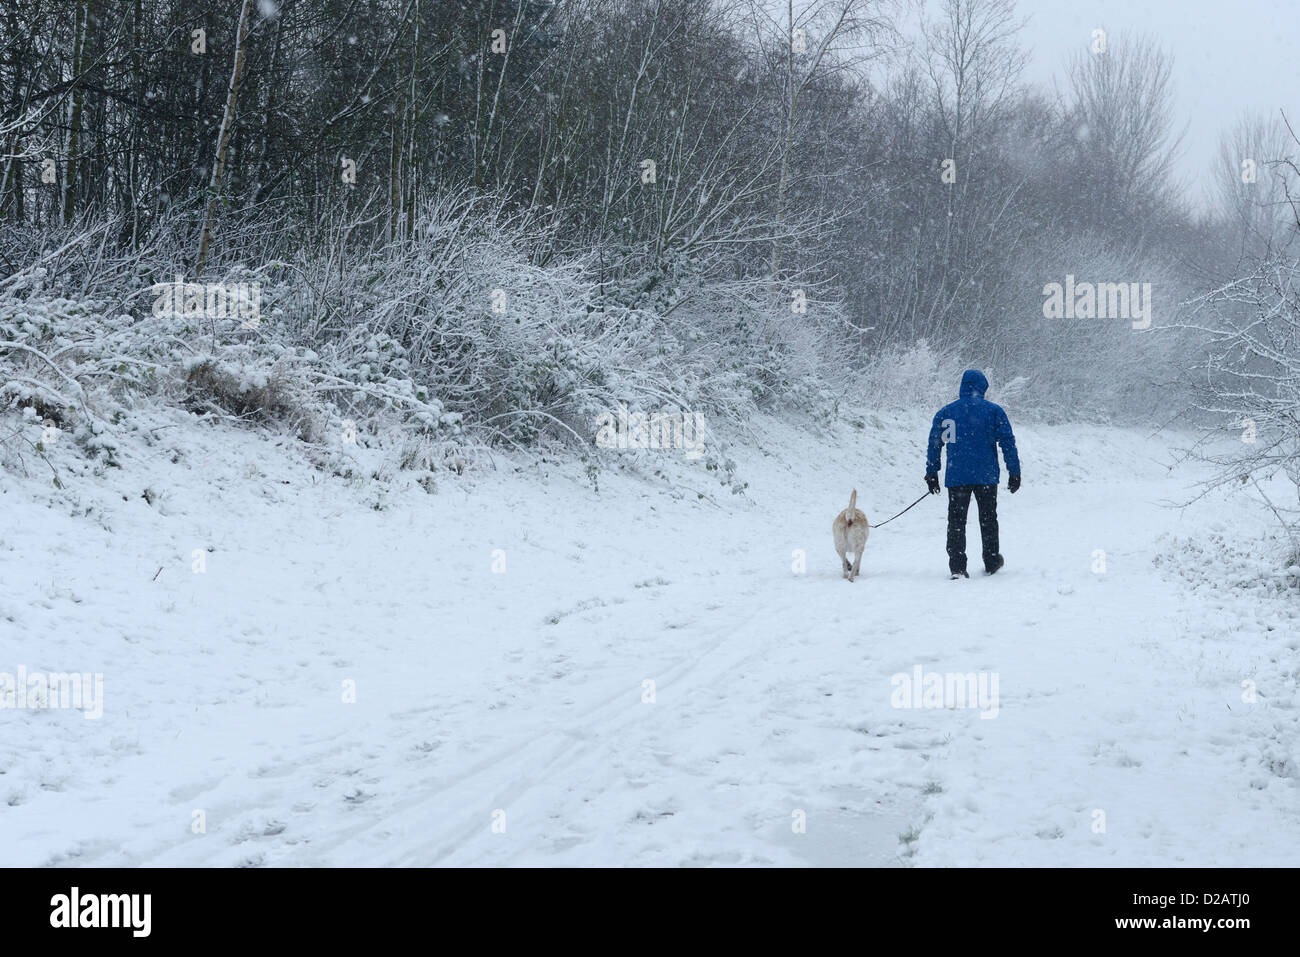 Un homme promenait son chien le long d'un sentier couvert de neige Banque D'Images